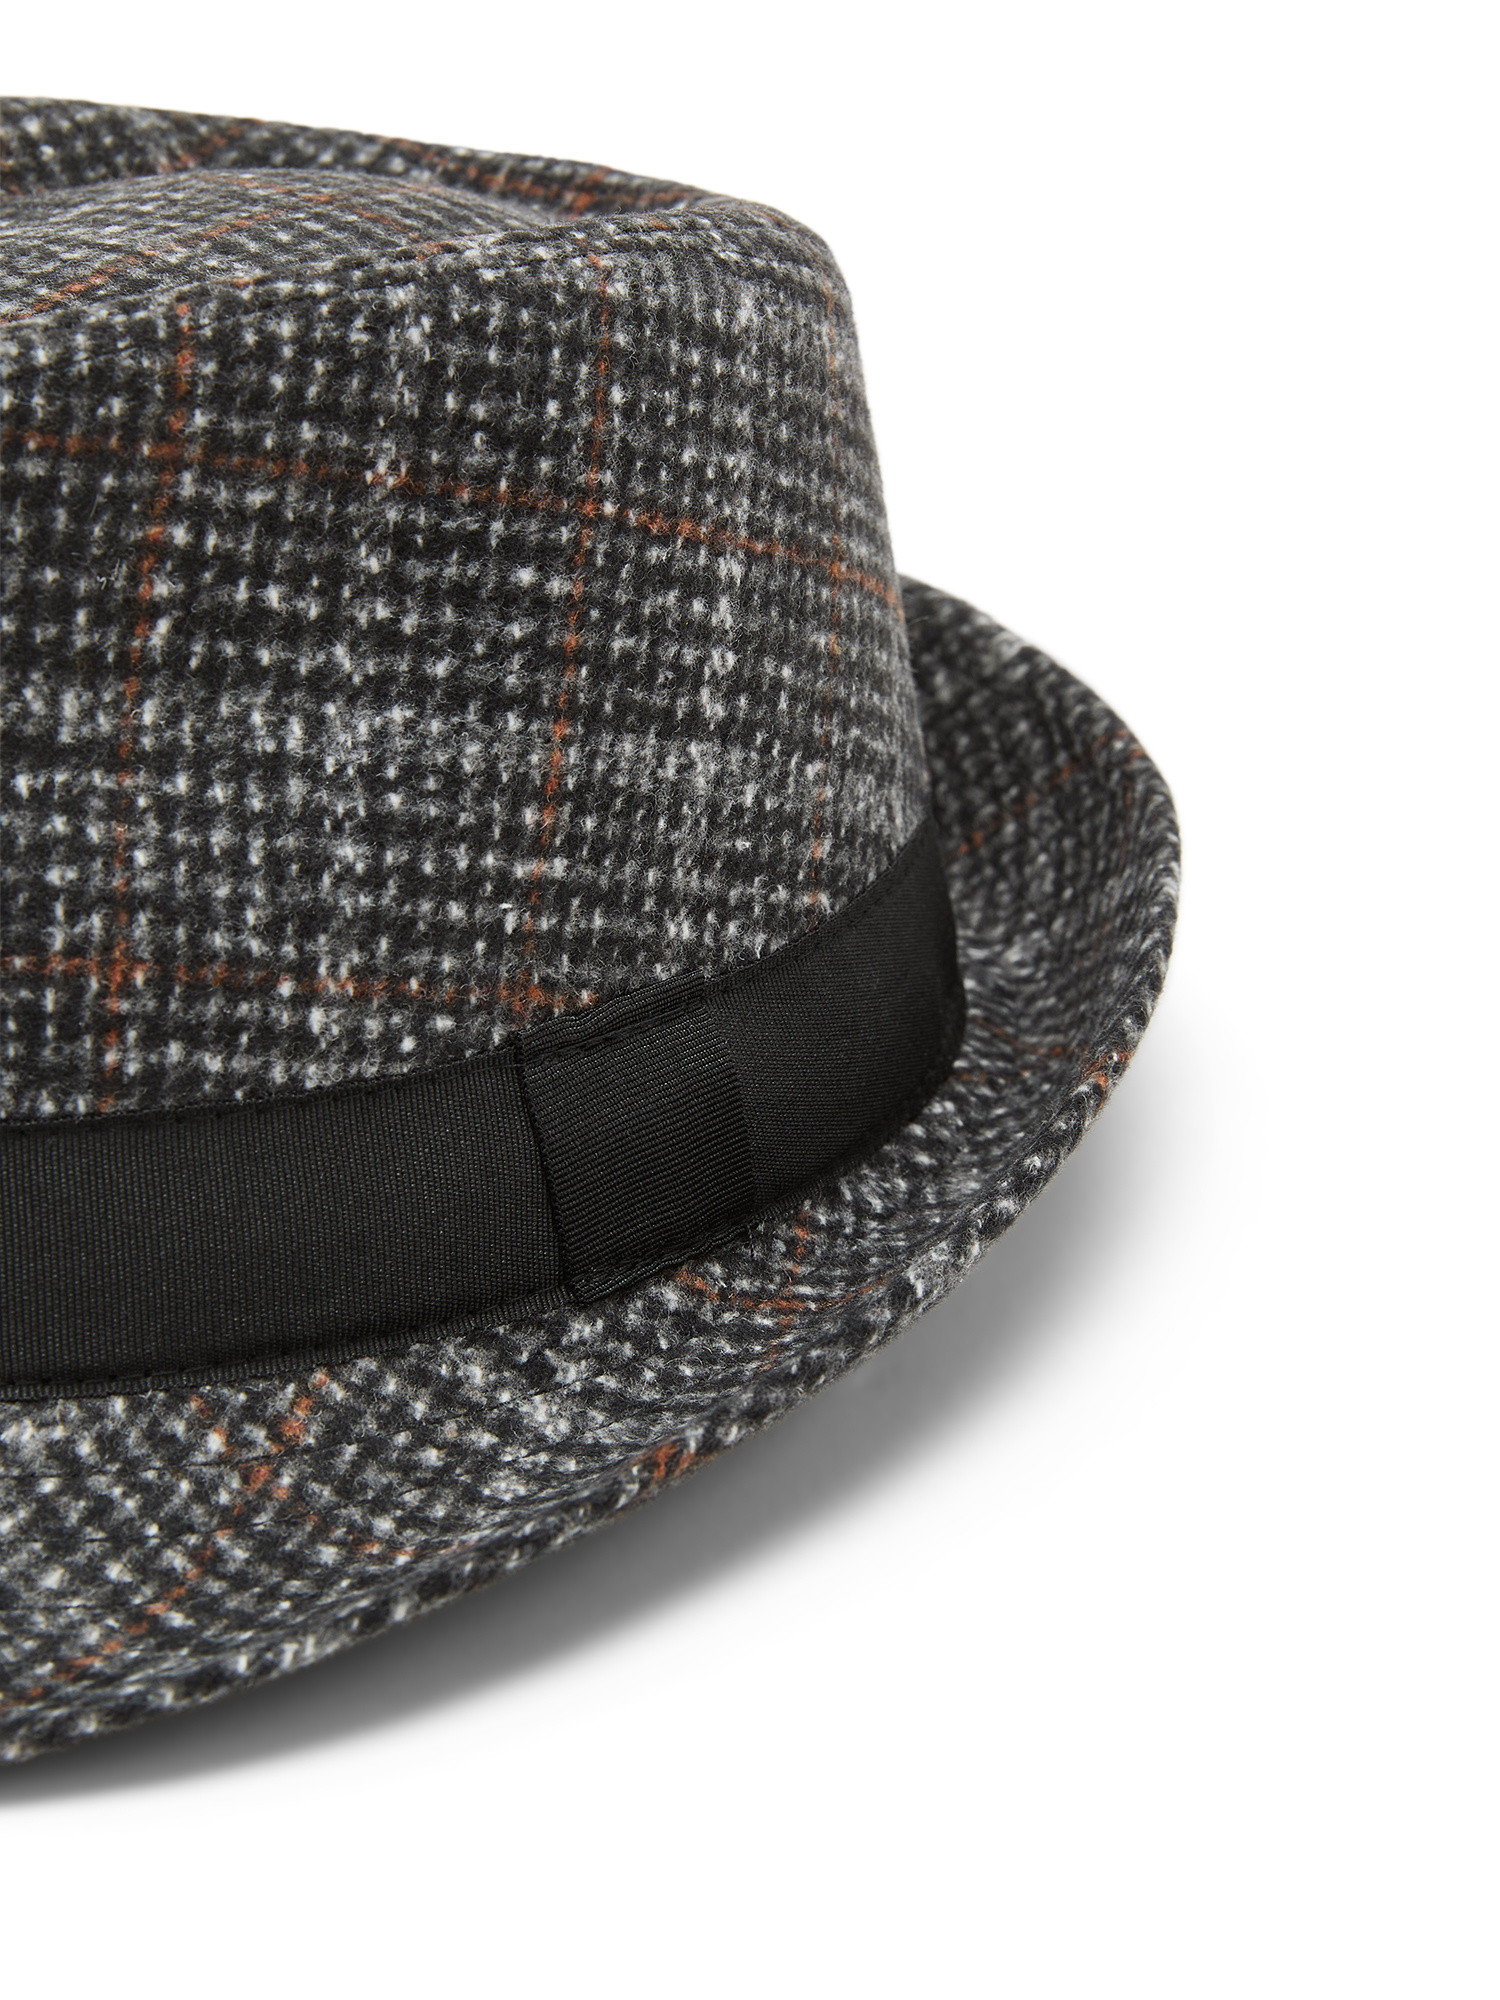 Luca D'Altieri - Tartan alpine hat, Black, large image number 1